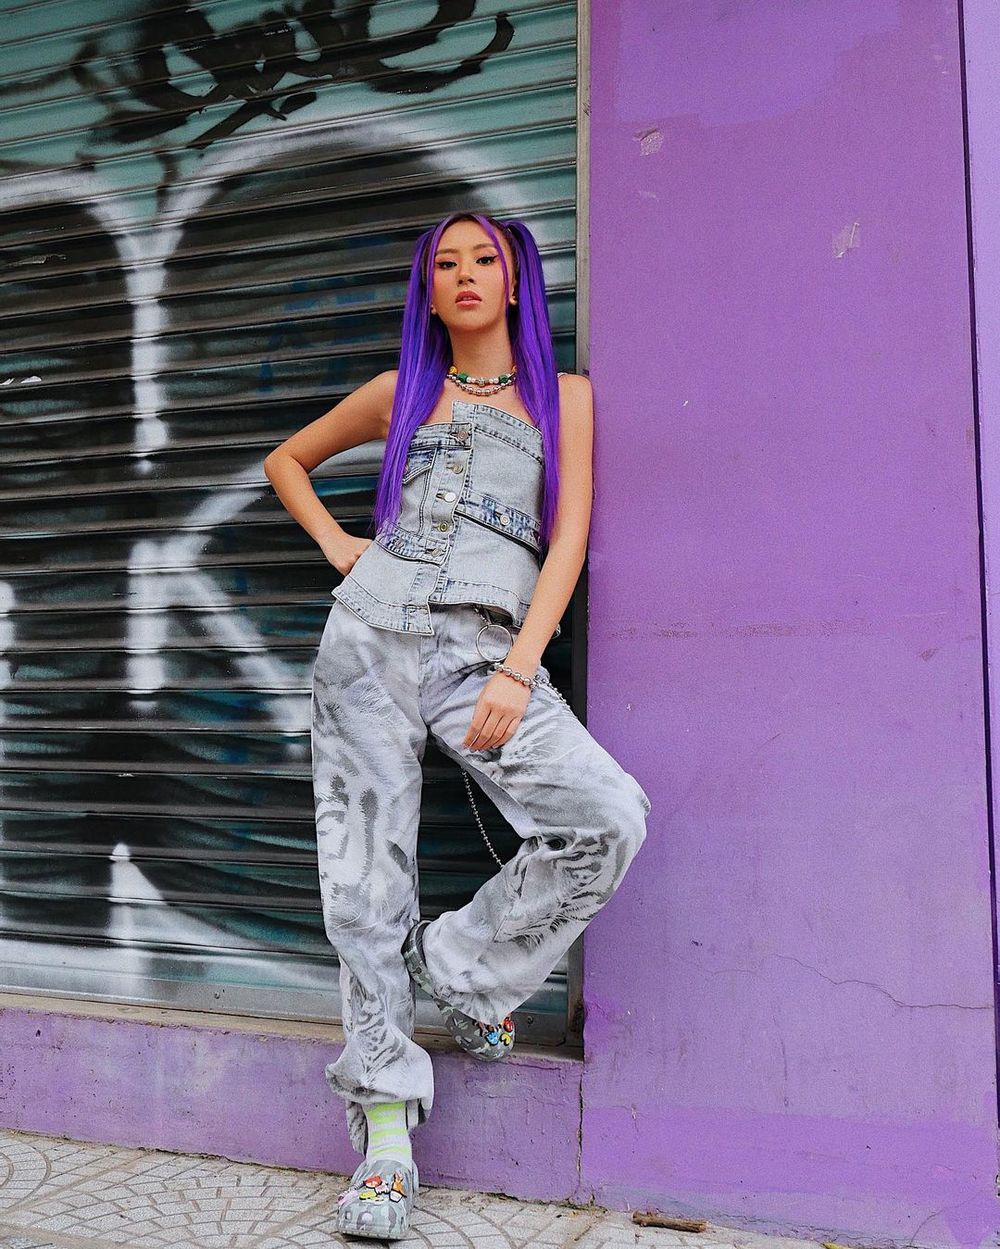  
Quỳnh Anh Shyn chọn chụp hình ở mảng tường màu tím để đồng điệu với màu tóc mới, hình ảnh "cool ngầu" rất phù hợp với người đẹp sinh năm 1996. (Ảnh: FBNV)